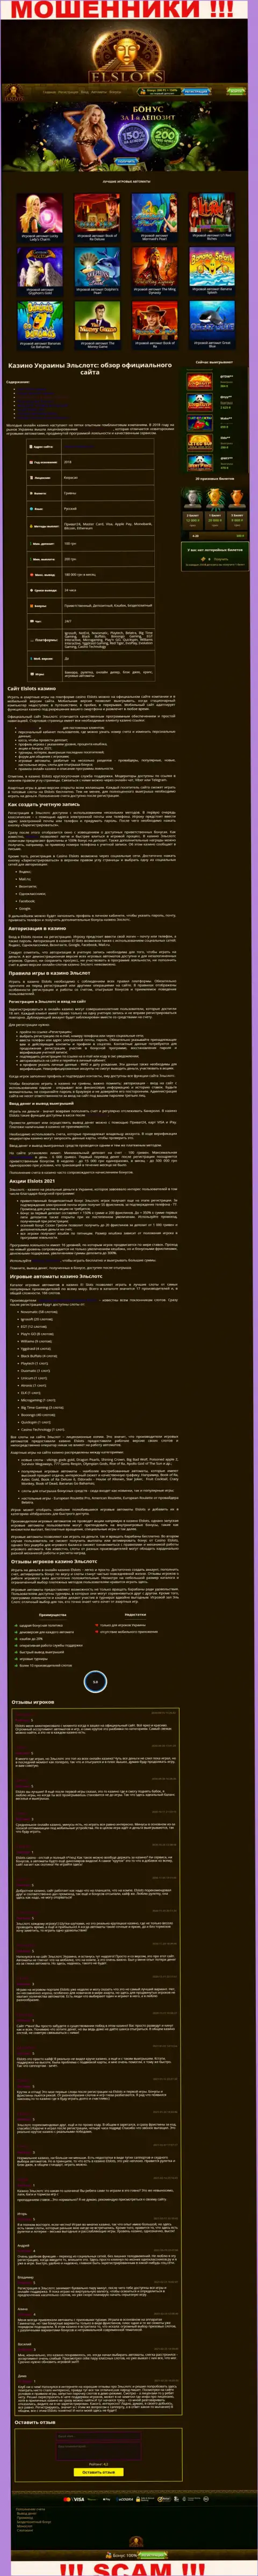 Вид официальной веб странички противоправно действующей организации ElSlots